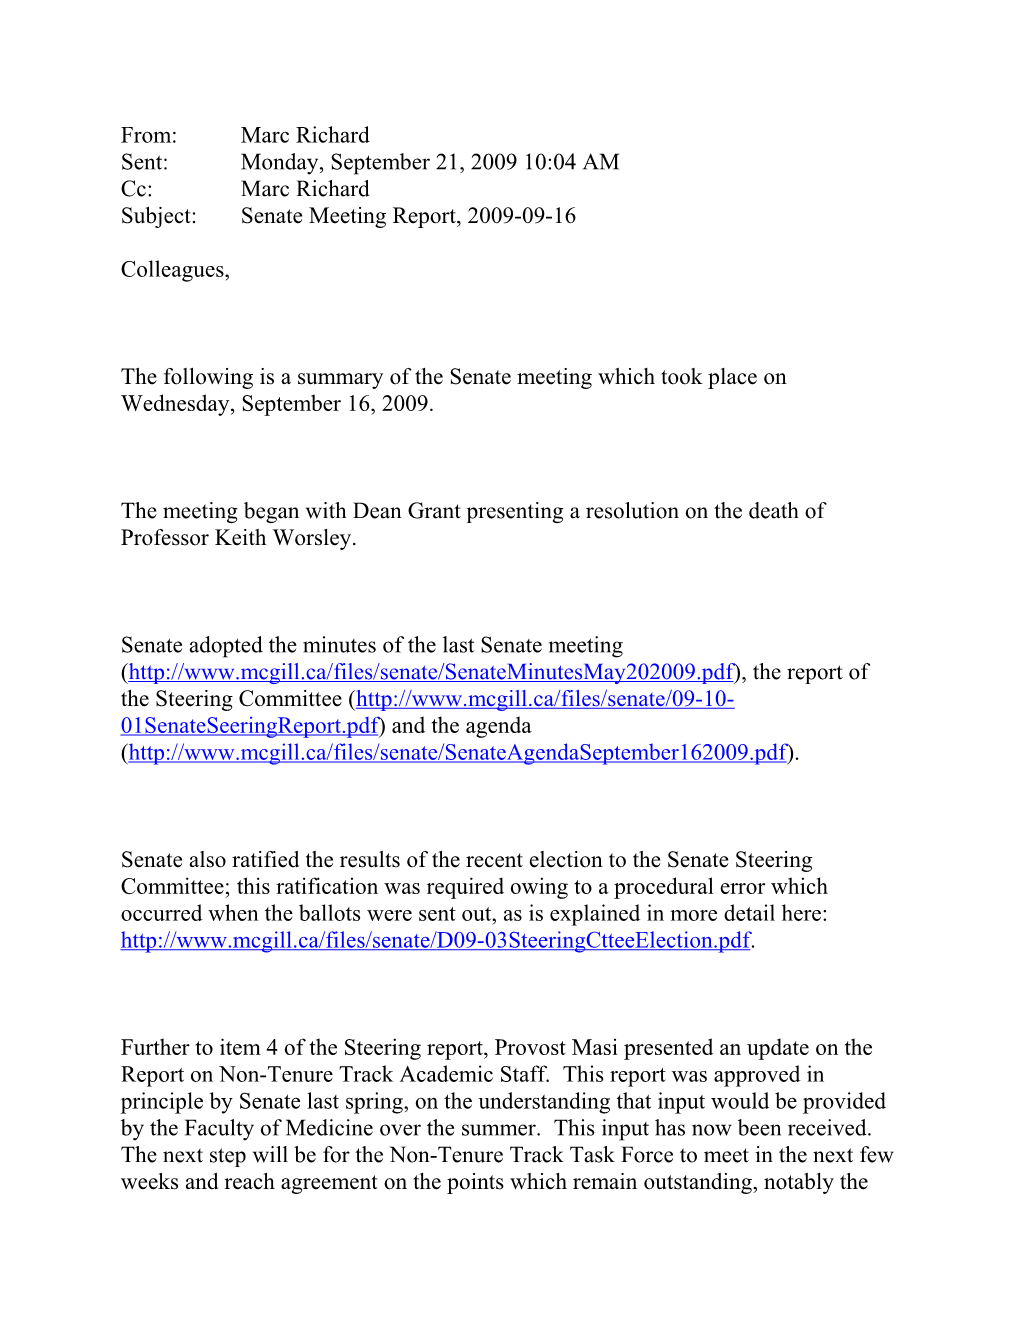 Subject: Senate Meeting Report, 2009-09-16